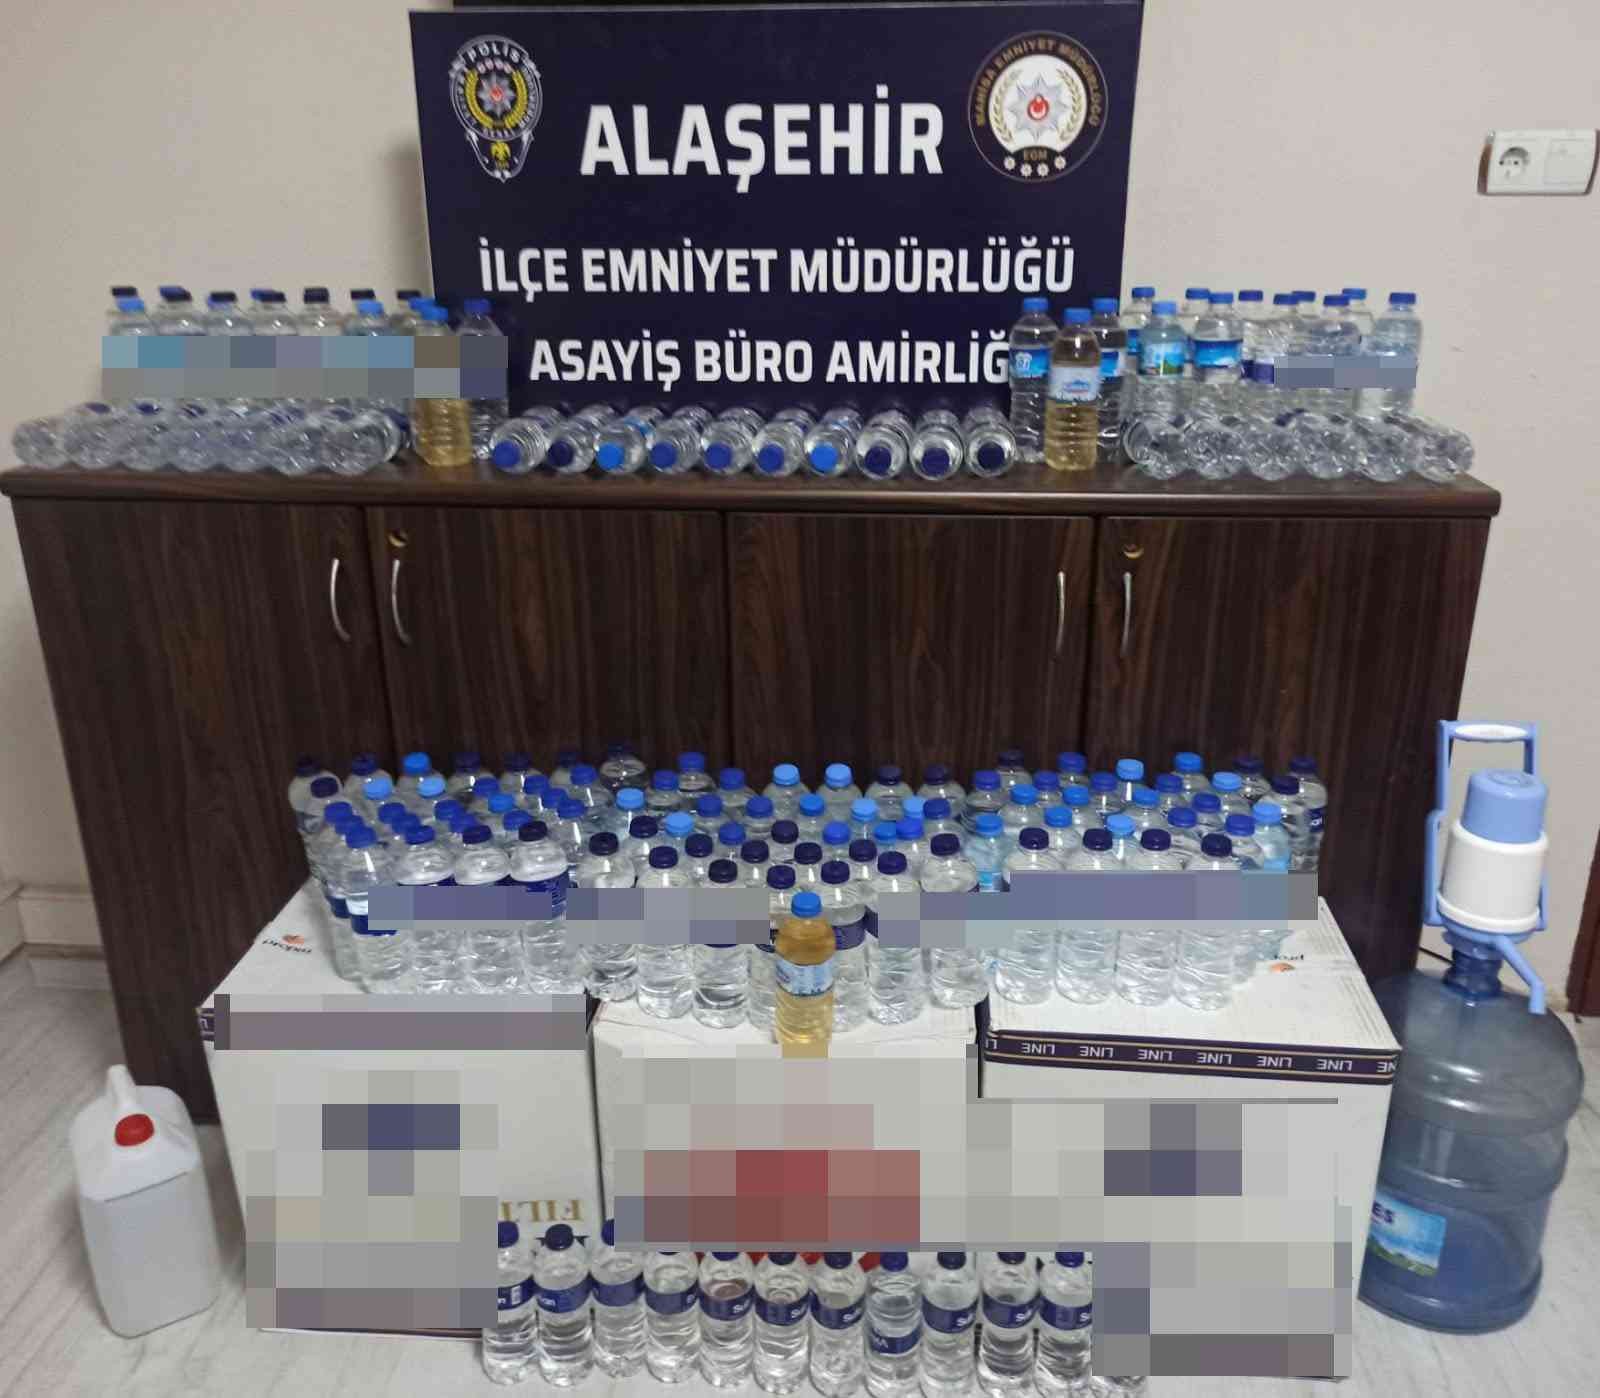 Manisa’da sahte içki operasyonu: 1 kişi gözaltına alındı #manisa